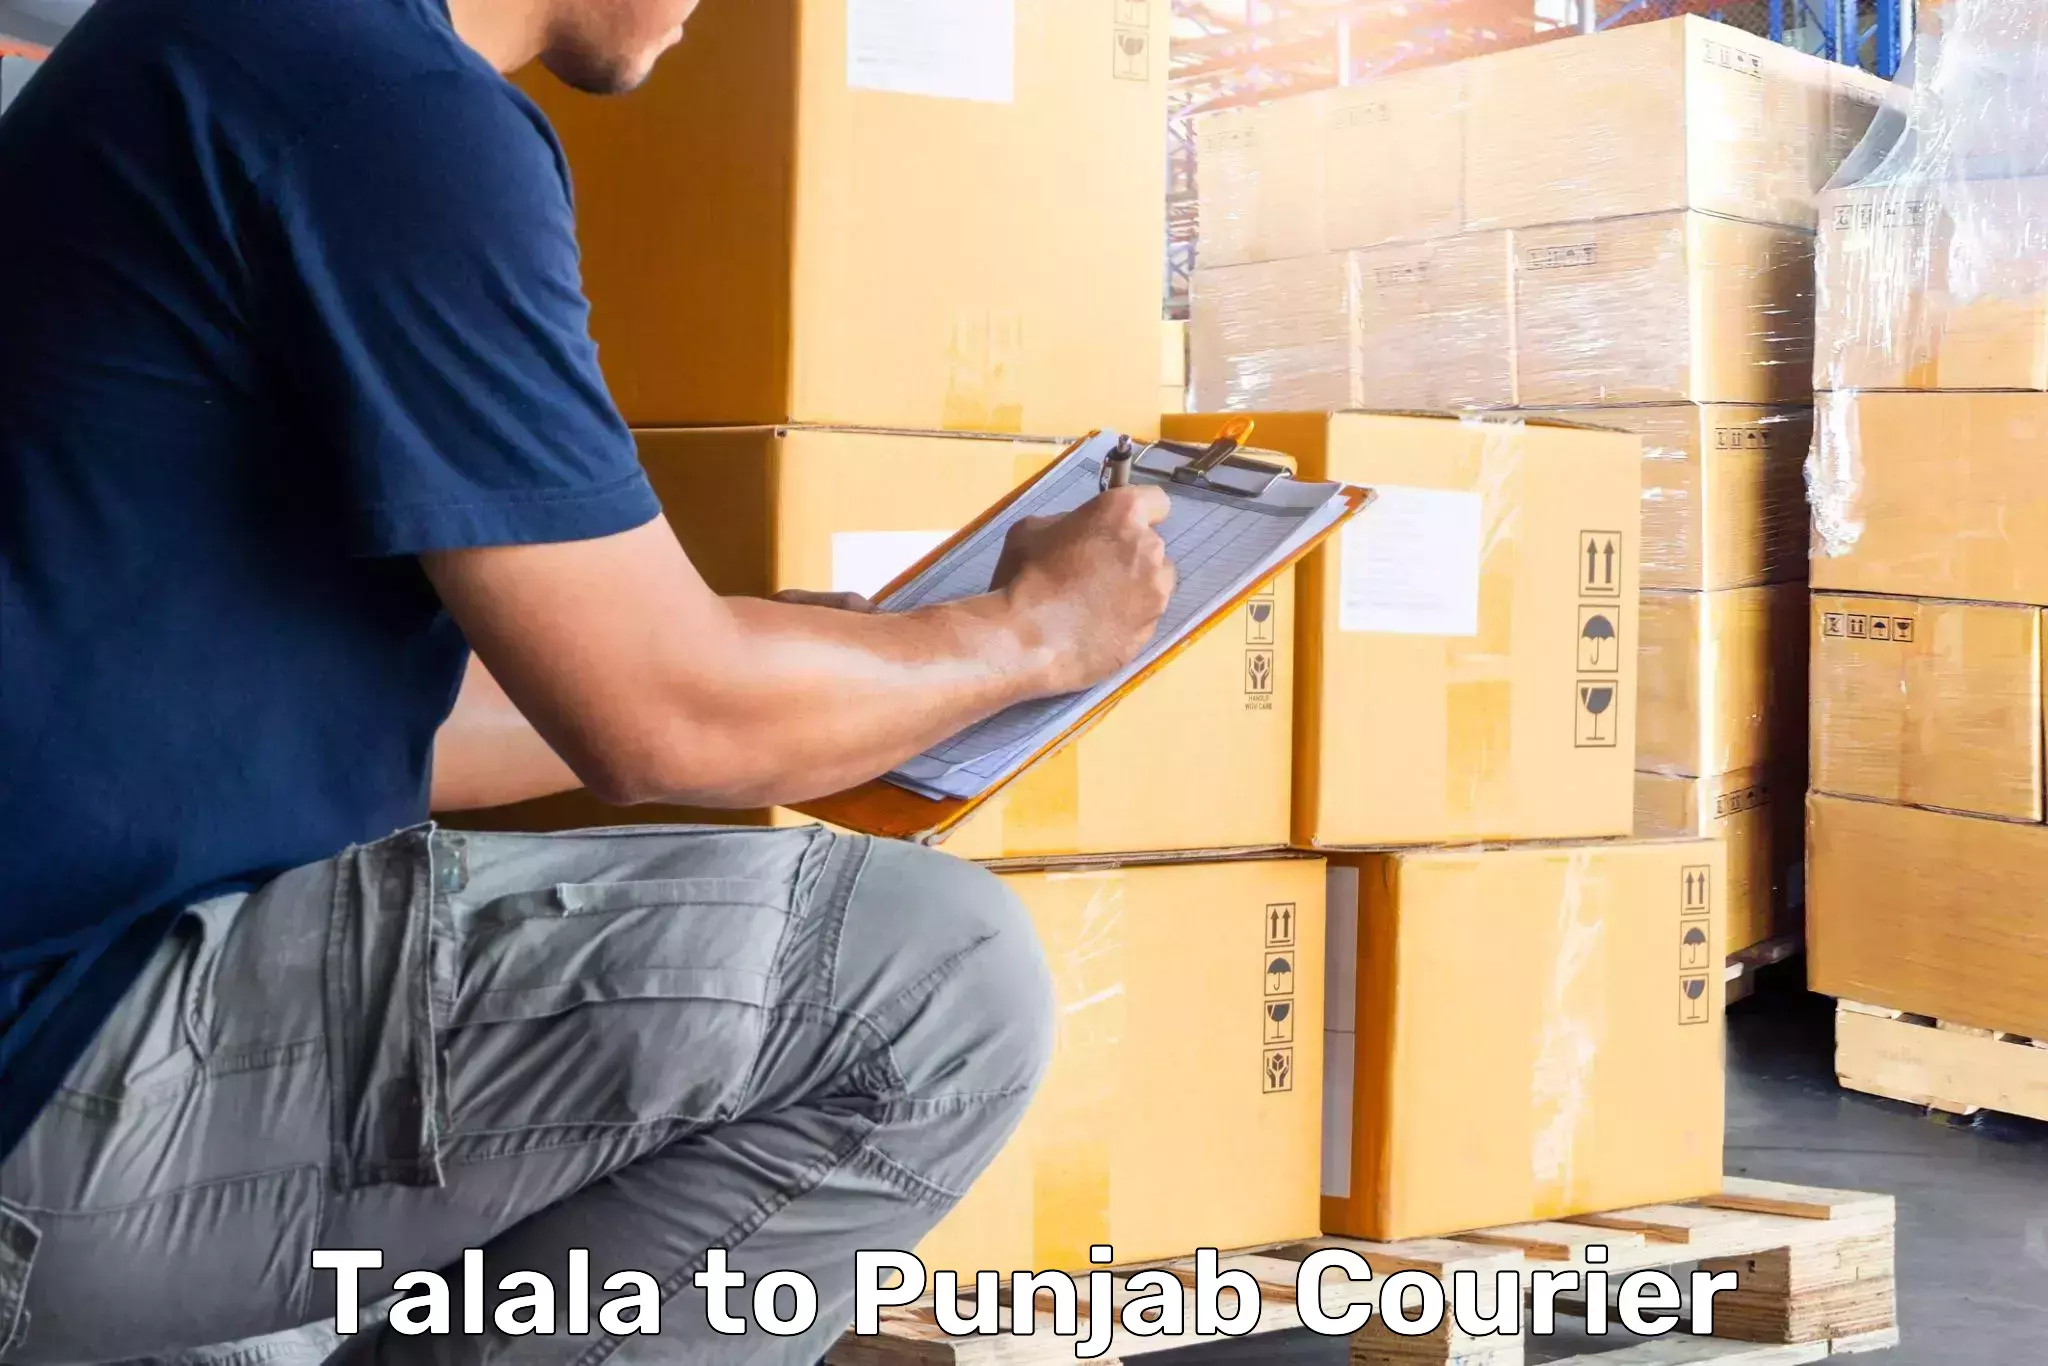 Luggage delivery optimization Talala to Central University of Punjab Bathinda